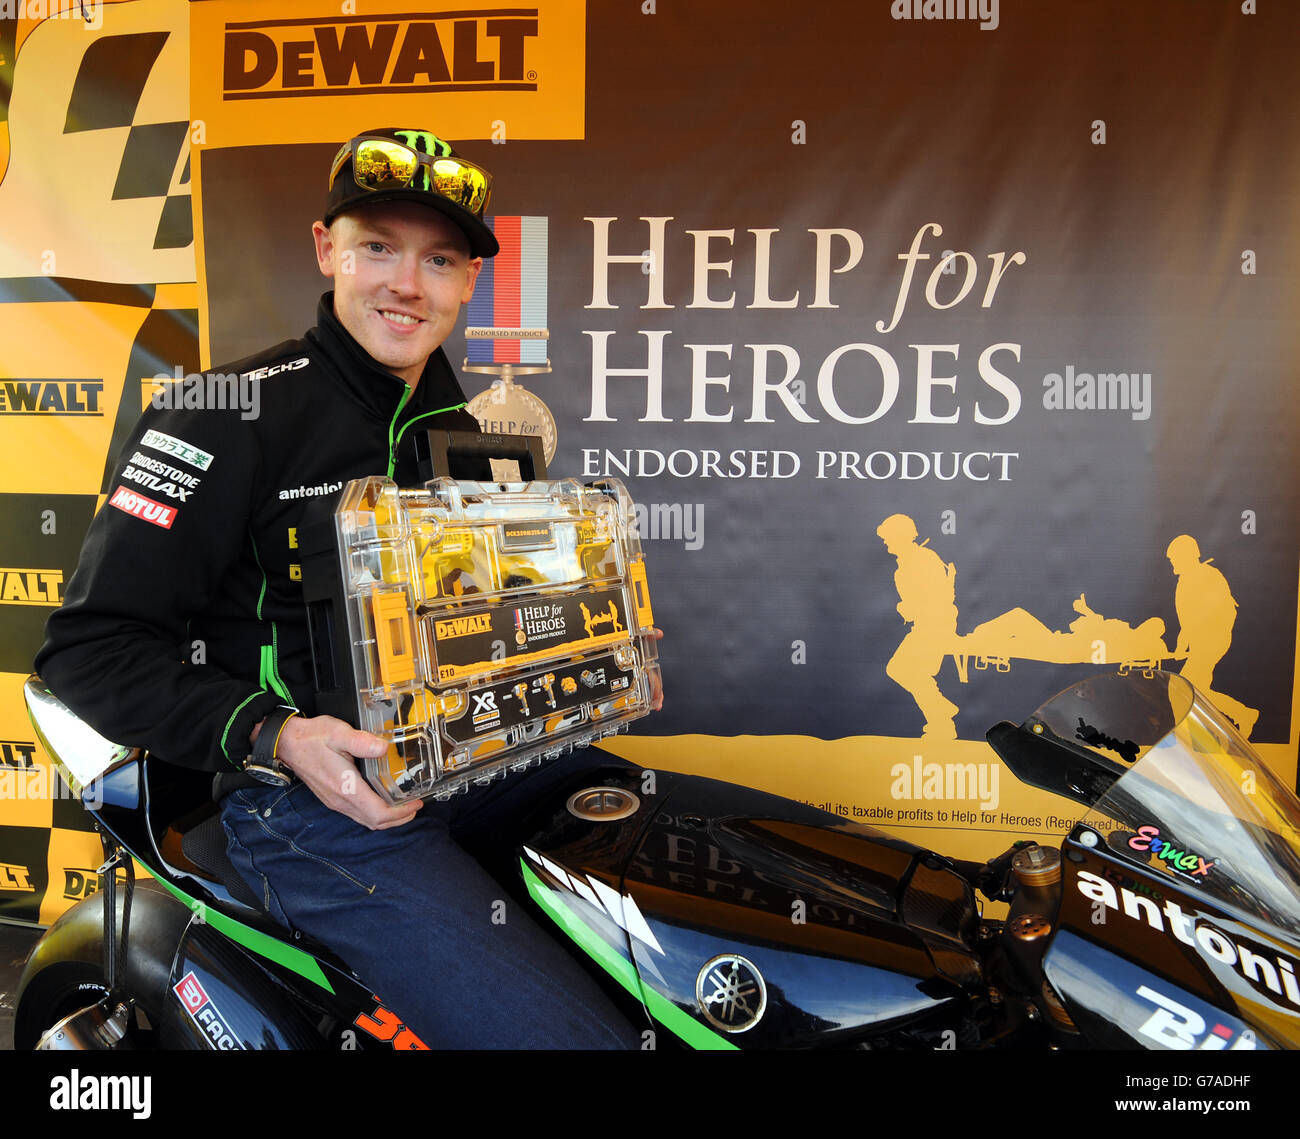 Motorrad-Rennfahrer Bradley Smith kündigt die Partnerschaft zwischen  Elektrowerkzeug-Marke DEWALT und UK Military Charity Help for Heroes auf  Silverstone Circuit in Towcester, Northamptonshire, während der MotoGP an  Stockfotografie - Alamy